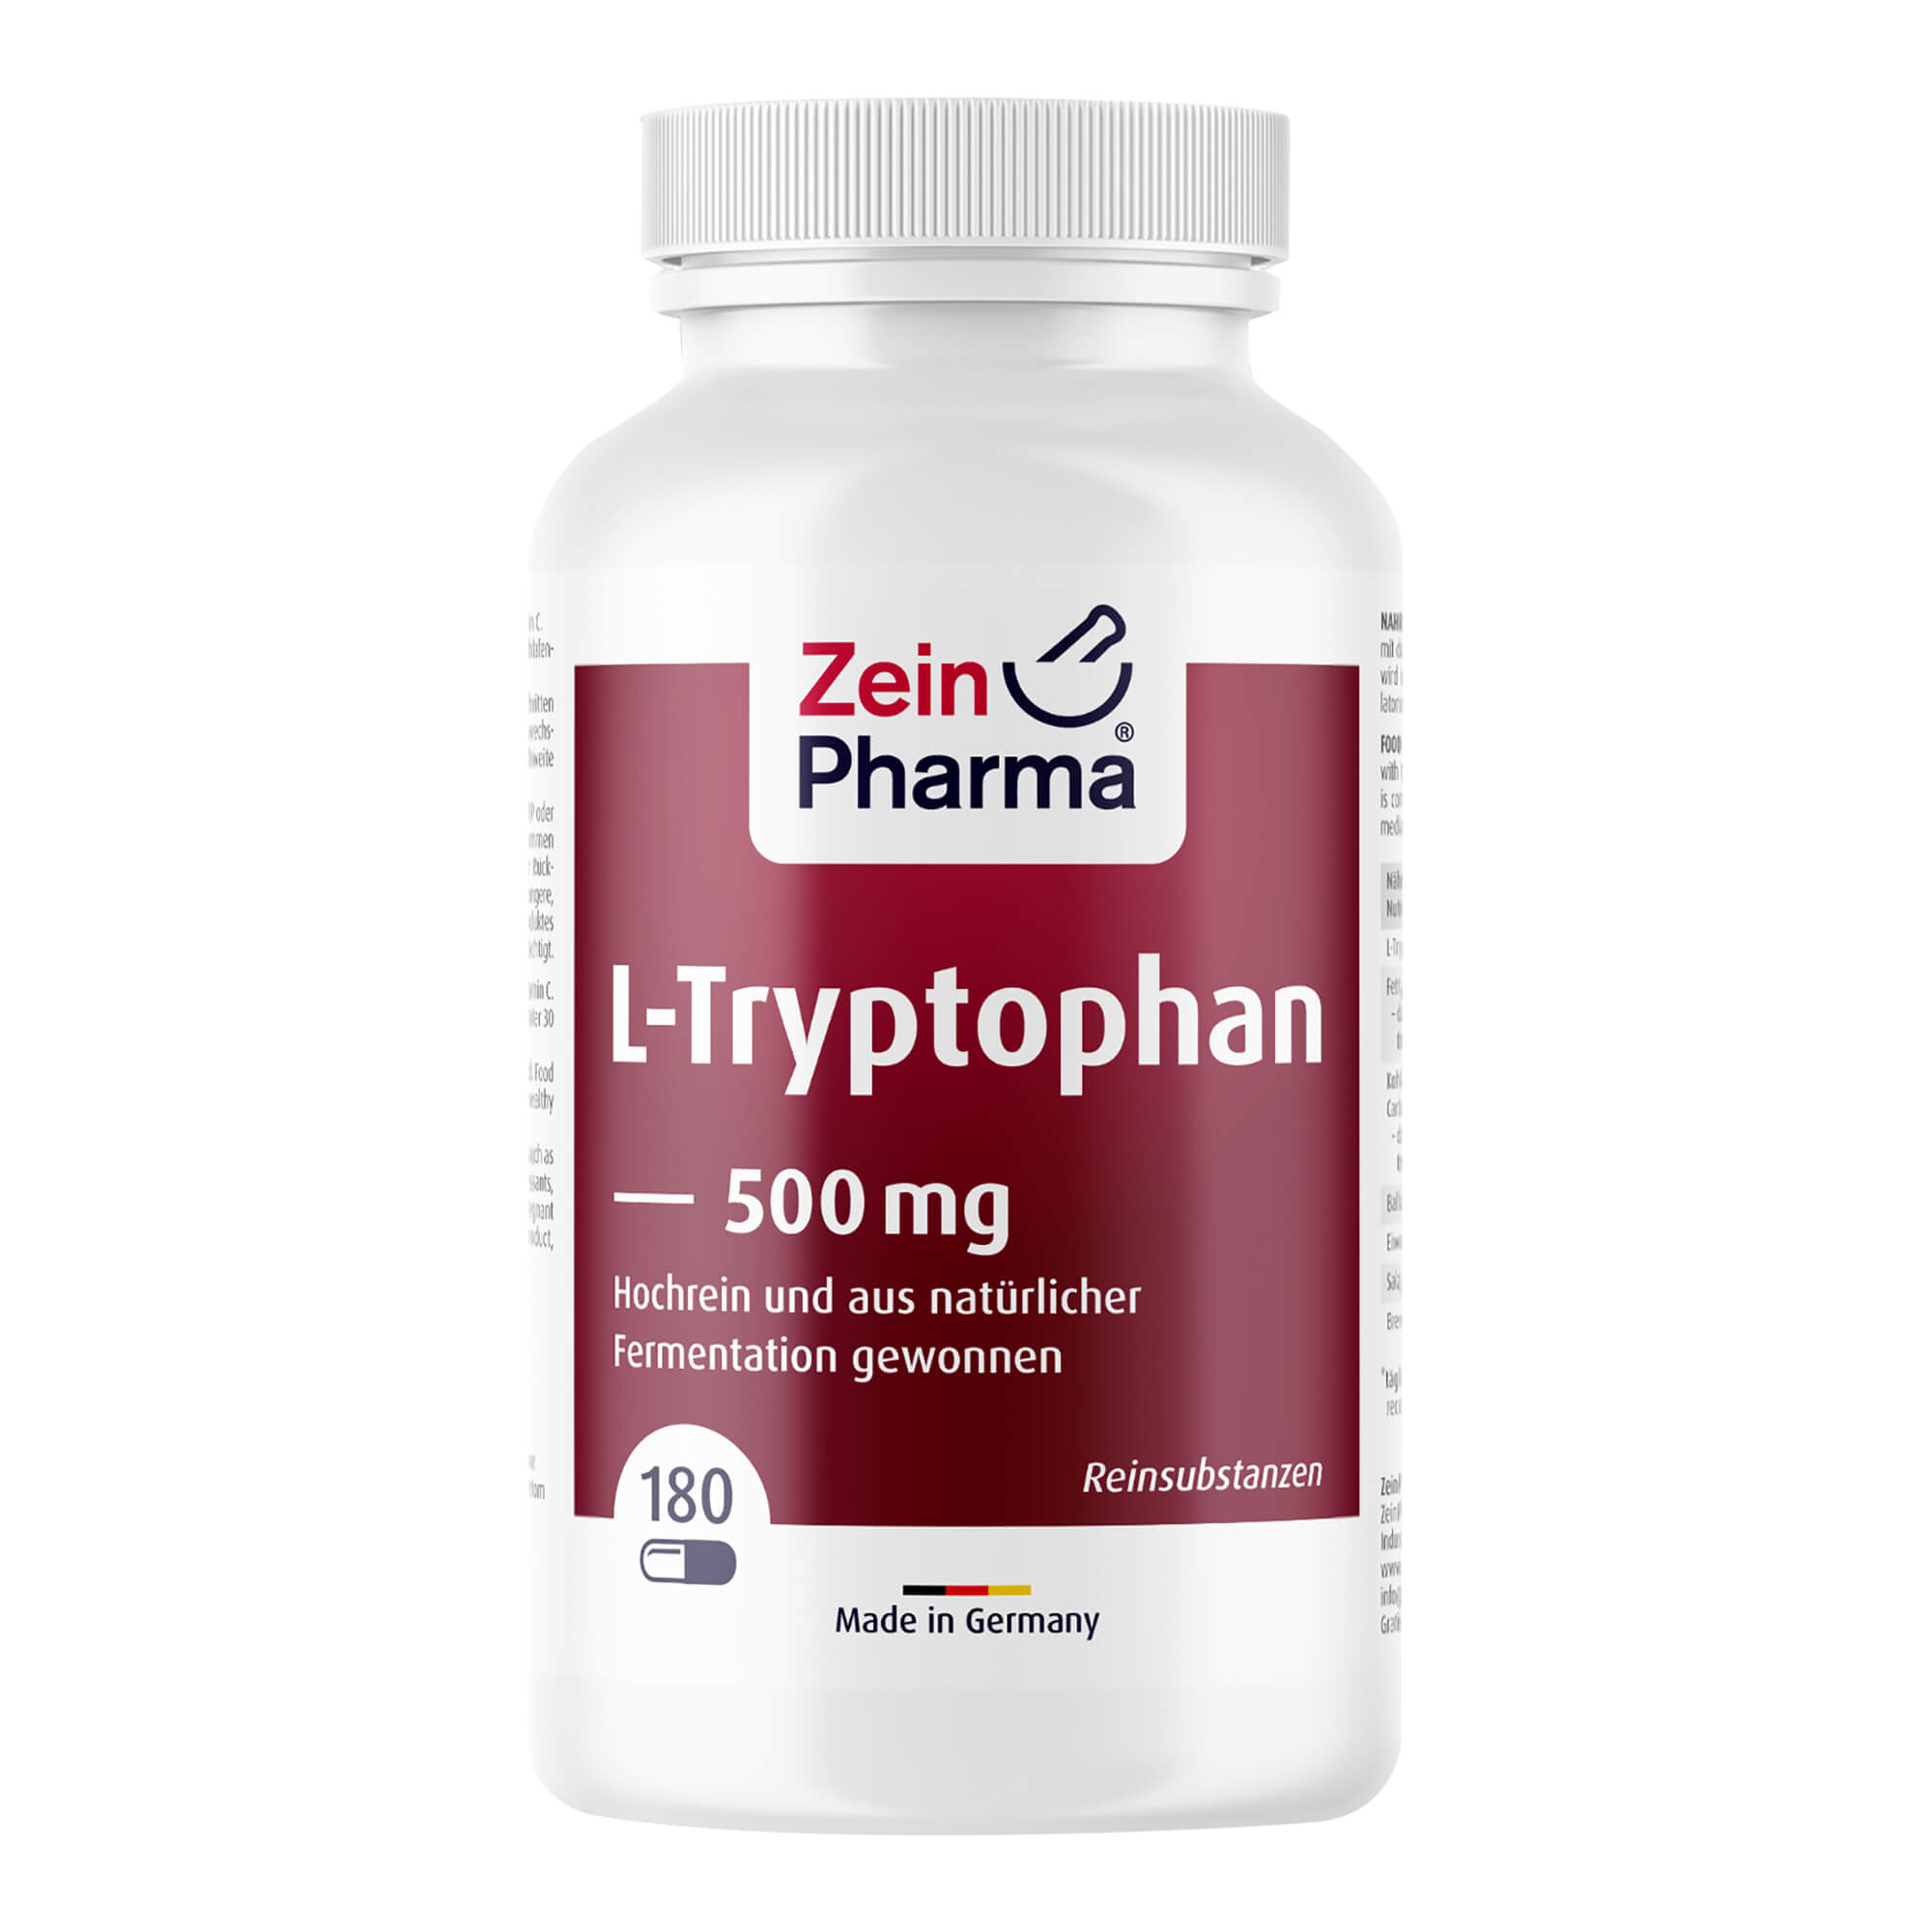 Nahrungsergänzungsmittel mit der essenziellen Aminosäure L-Tryptophan.